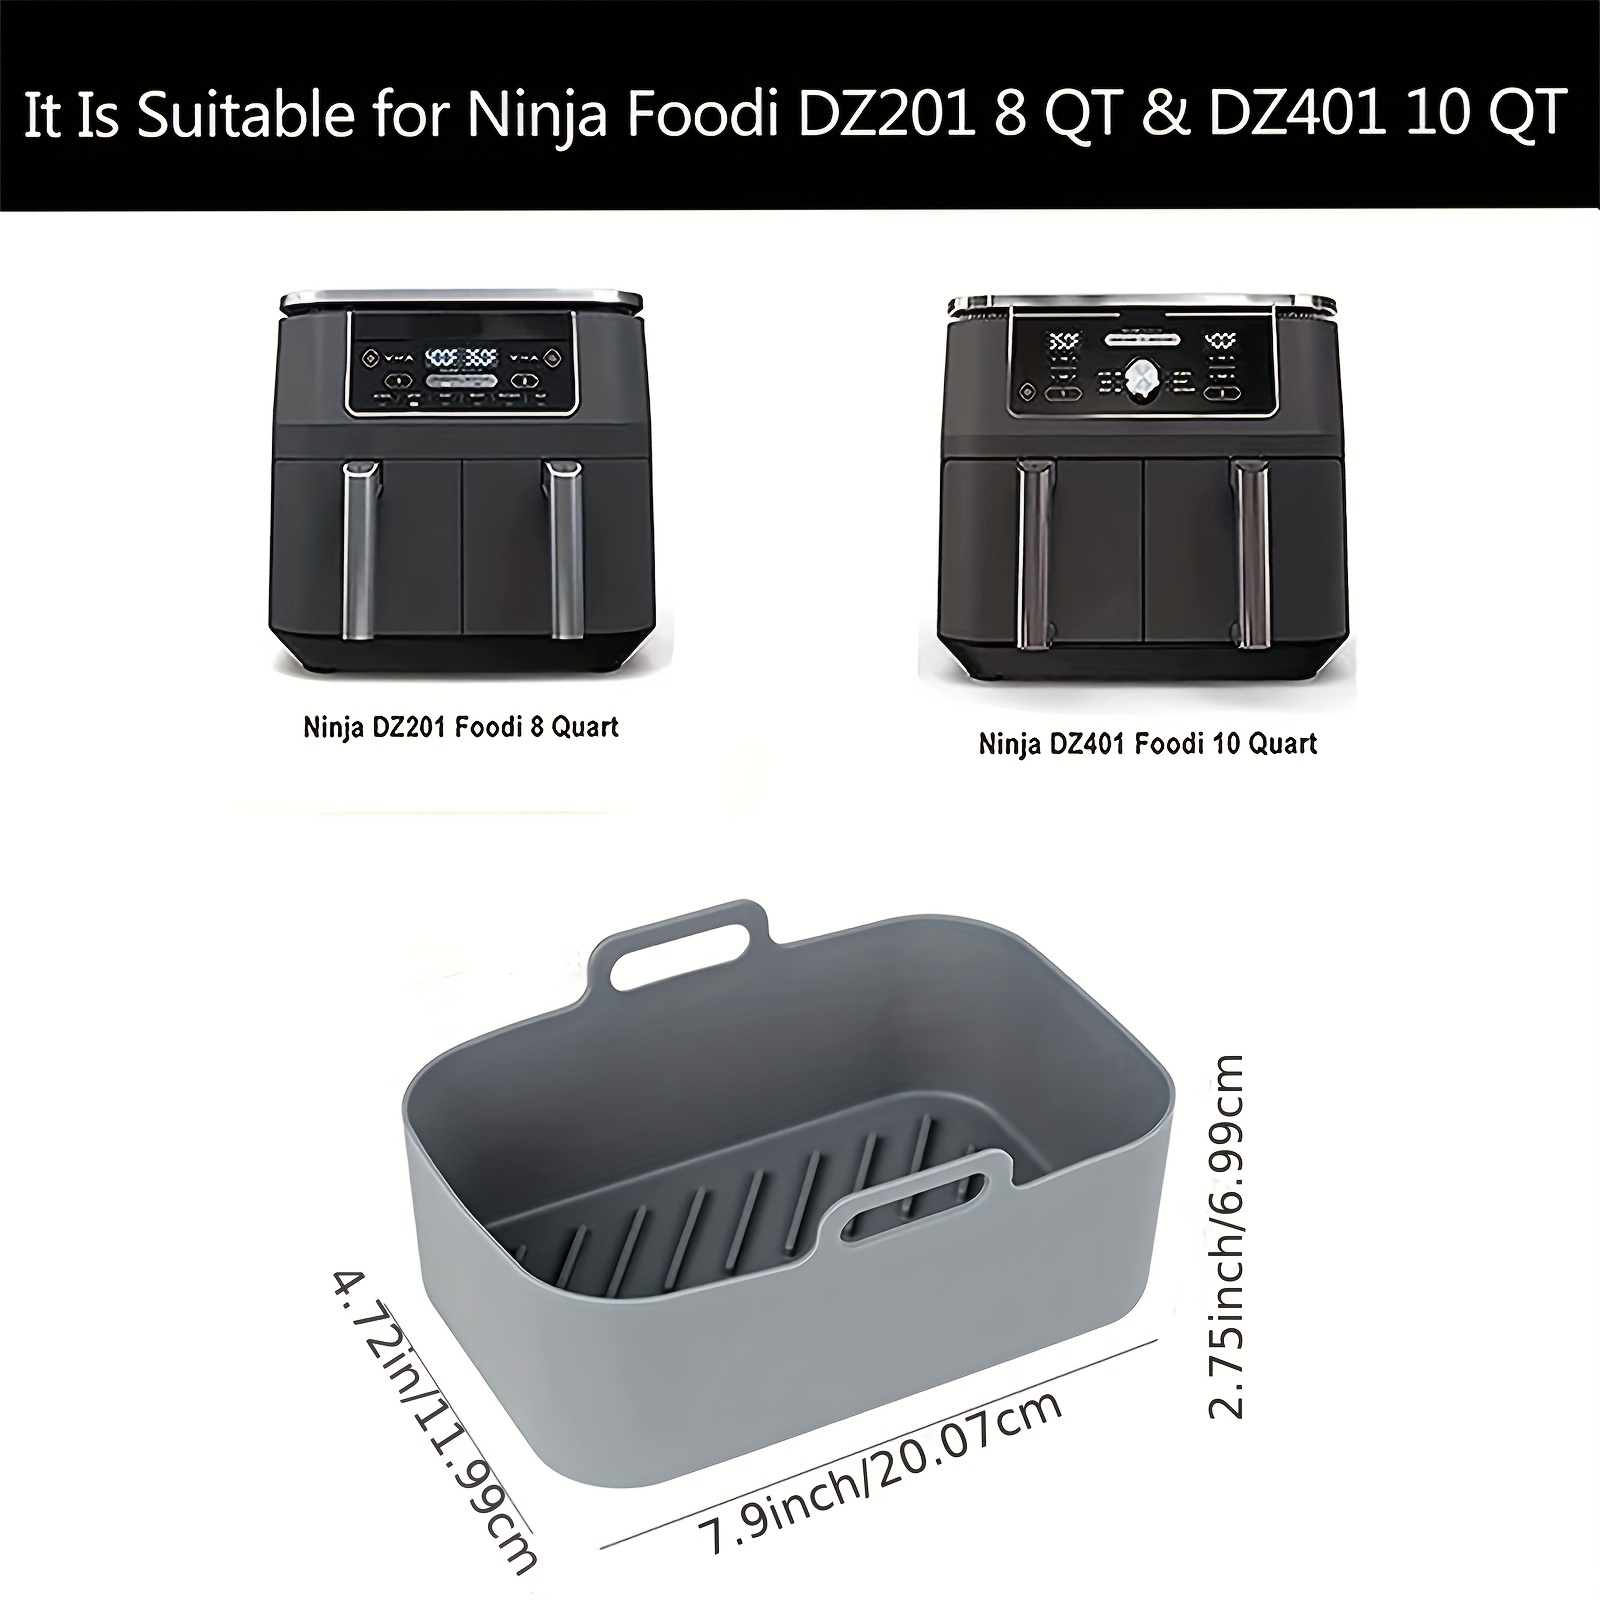 Ninja Air Fryer Liners Disposable (Fits 2-5 QT) – 150 Pcs Air